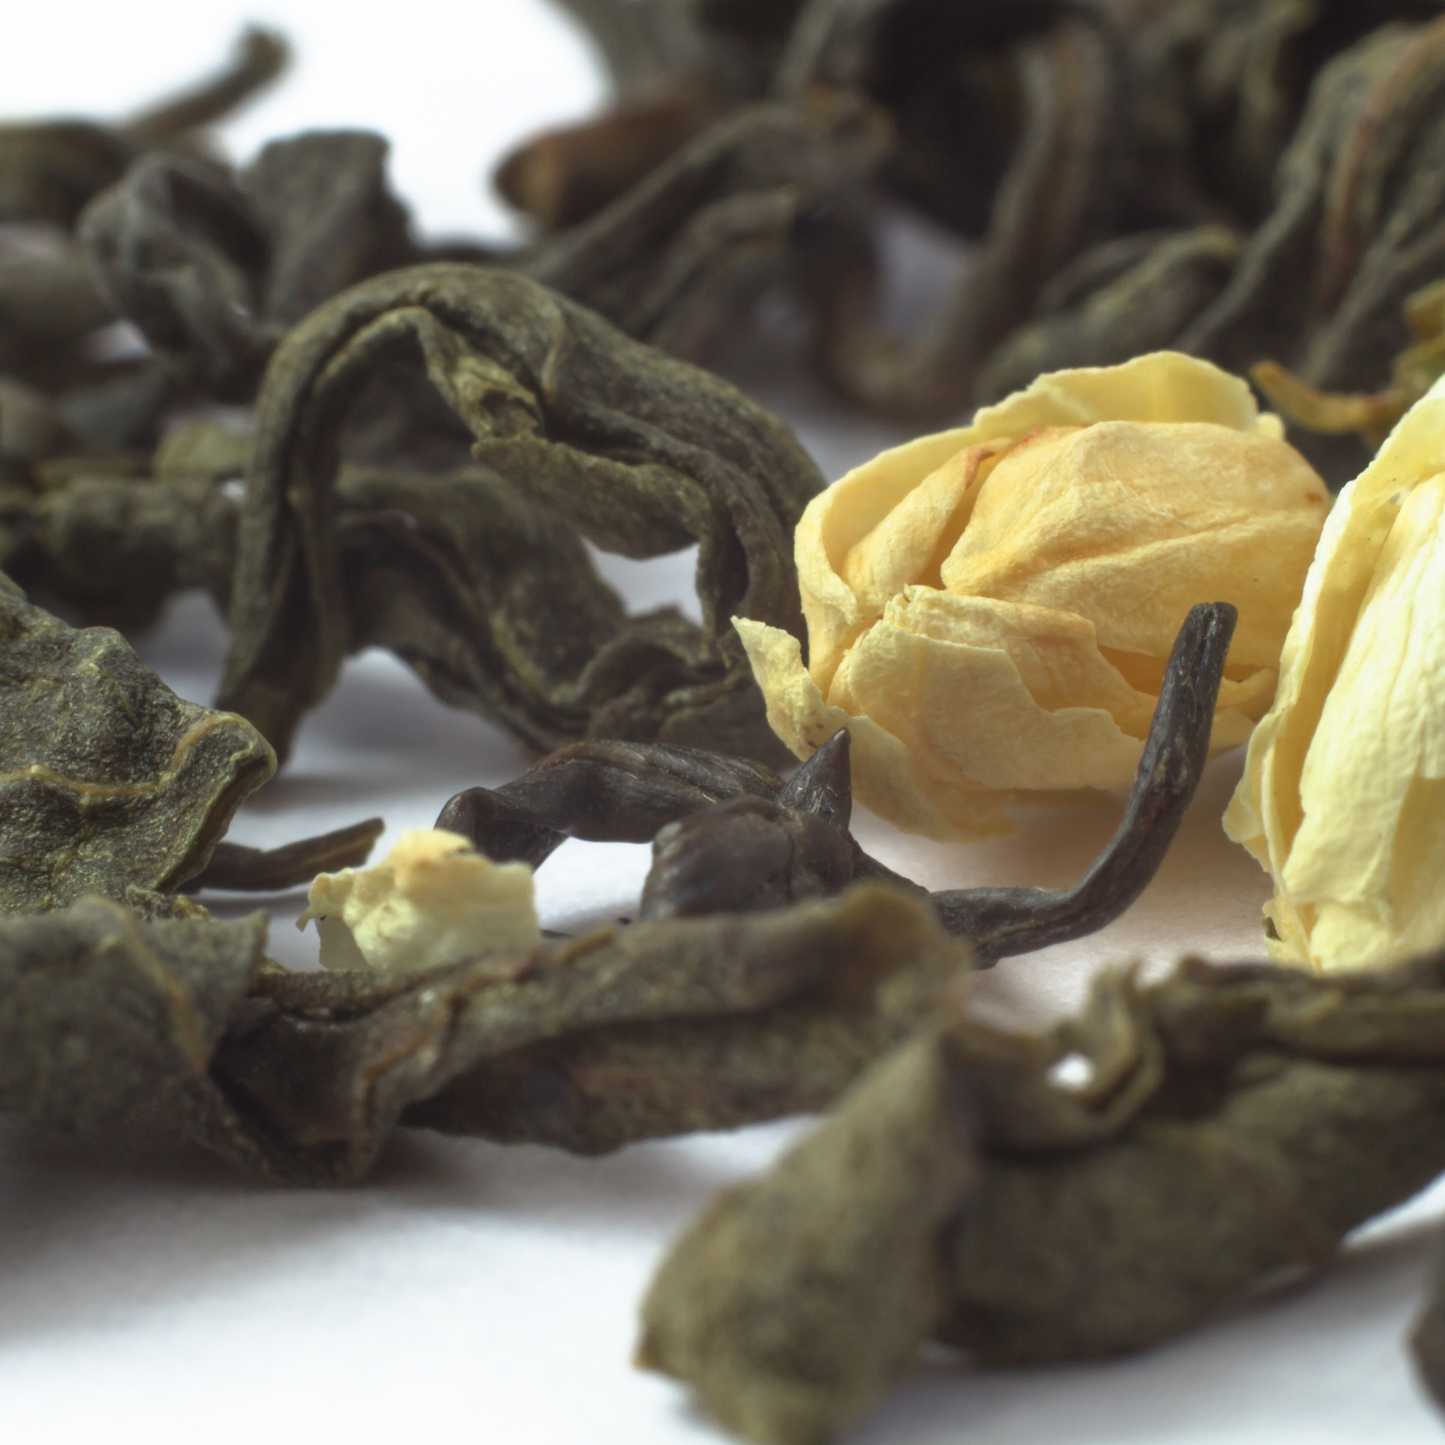 Jasmine Scented Tea, Loose Leaf Tea, Green Tea, Scented Teas, Loose Leaf Tea, Sencha Tea